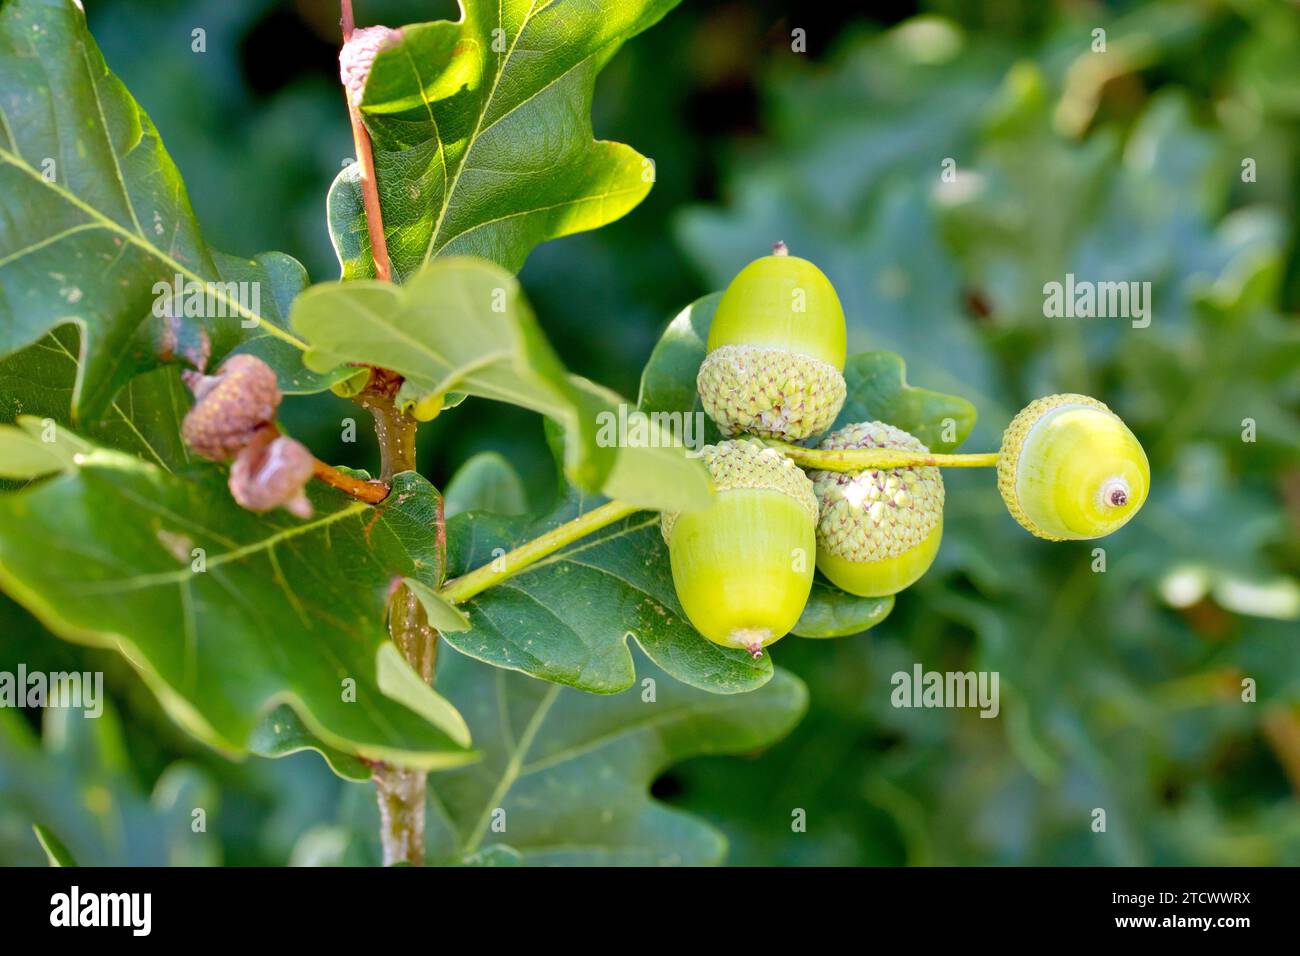 Quercia inglese o quercia peduncolata (quercus robur), primo piano che mostra diverse ghiande o frutti che si sviluppano sull'albero. Foto Stock